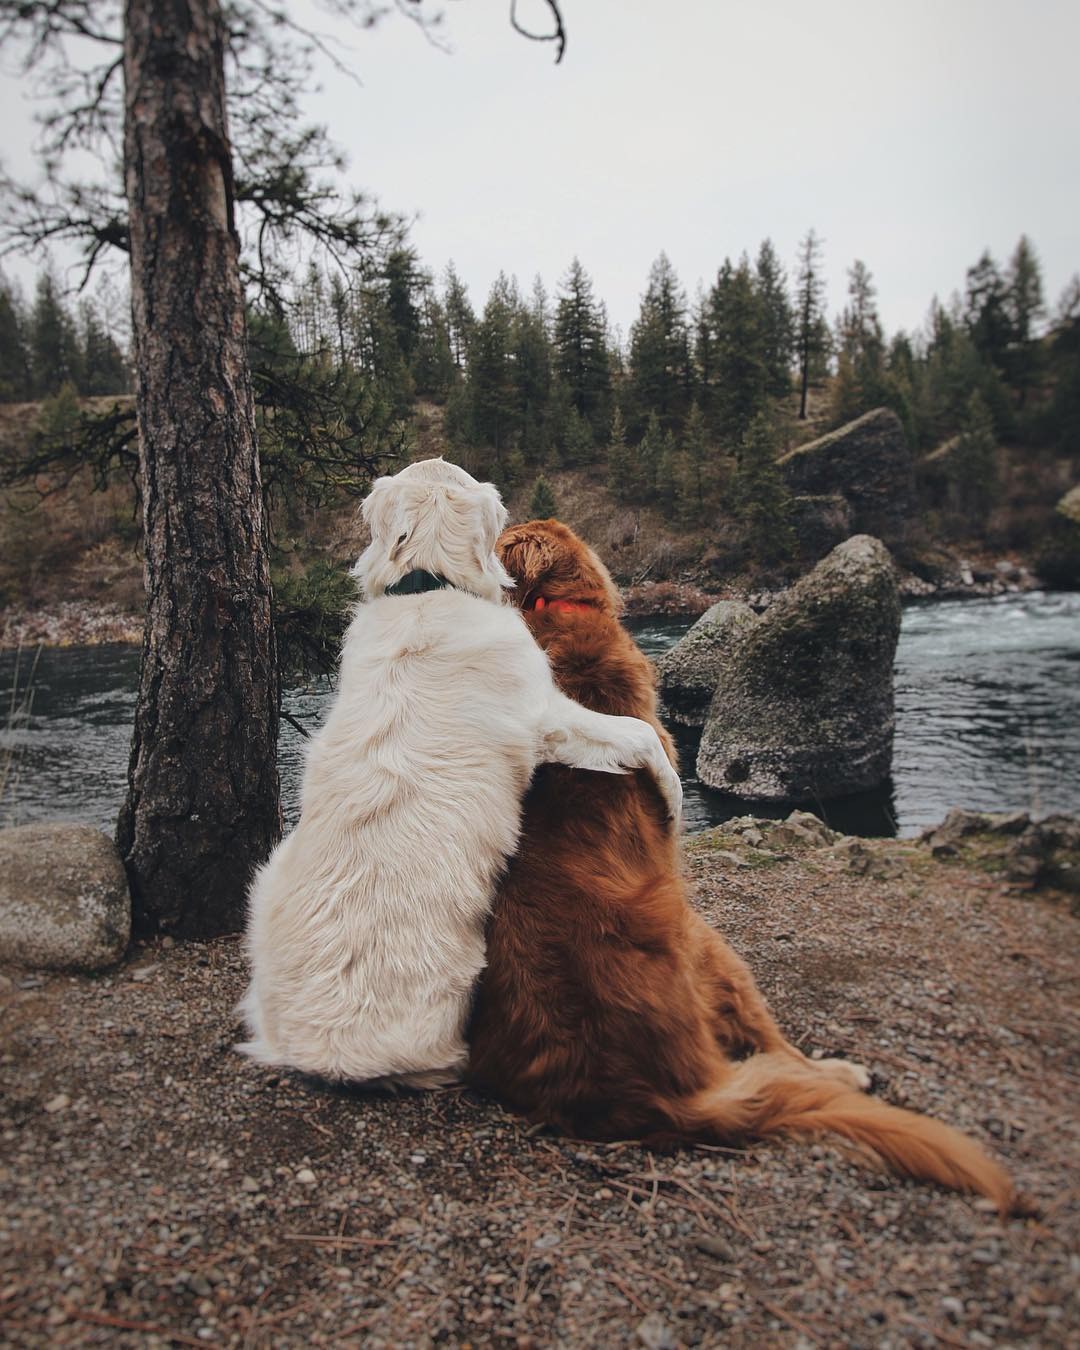 Chó dính nhau: Xem hình chú chó dính nhau này, bạn sẽ cảm nhận được tình cảm đích thực giữa hai chú chó. Hãy đón xem và cảm nhận sự yêu thương thật sự đang có giữa chúng.